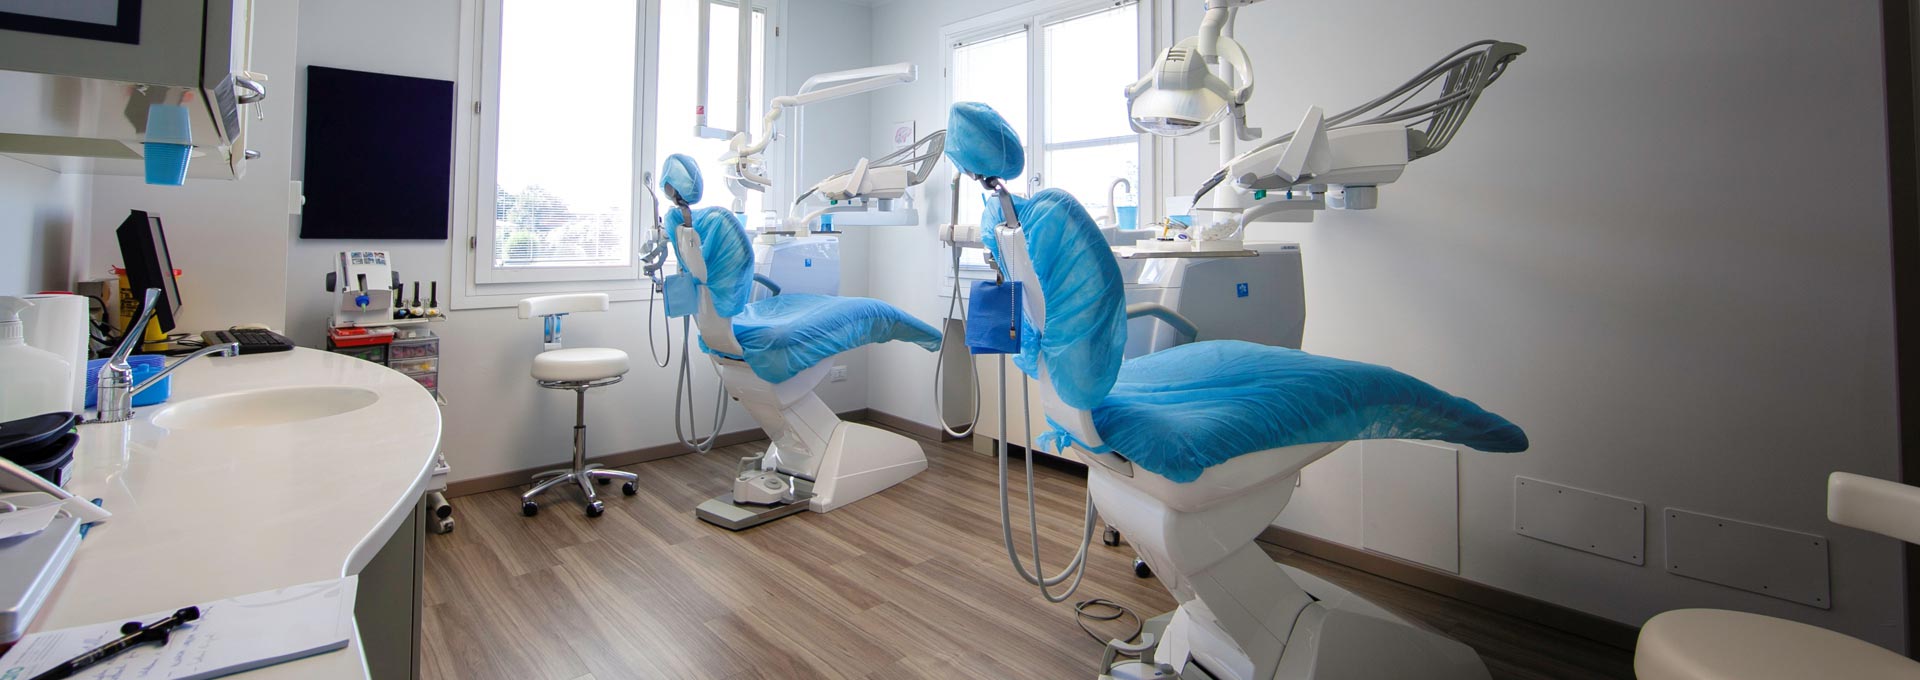 Studio dentistico a Verona | Studio dentistico Muraro 2